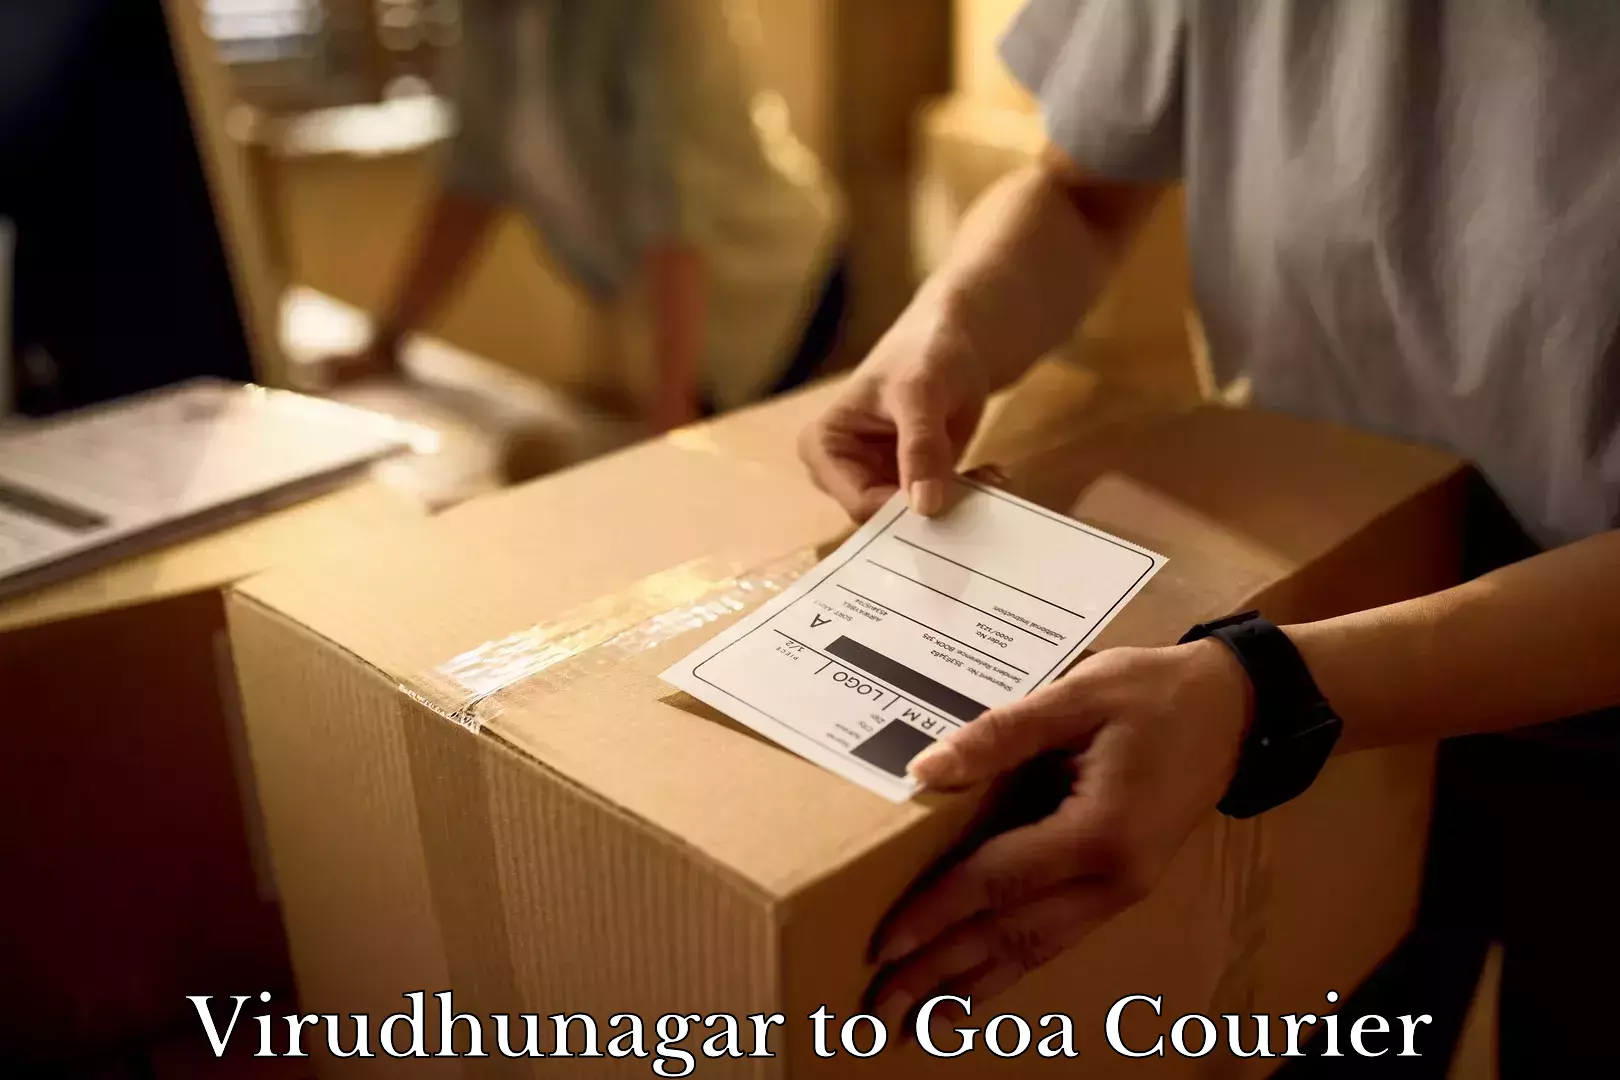 Furniture moving experts Virudhunagar to Ponda